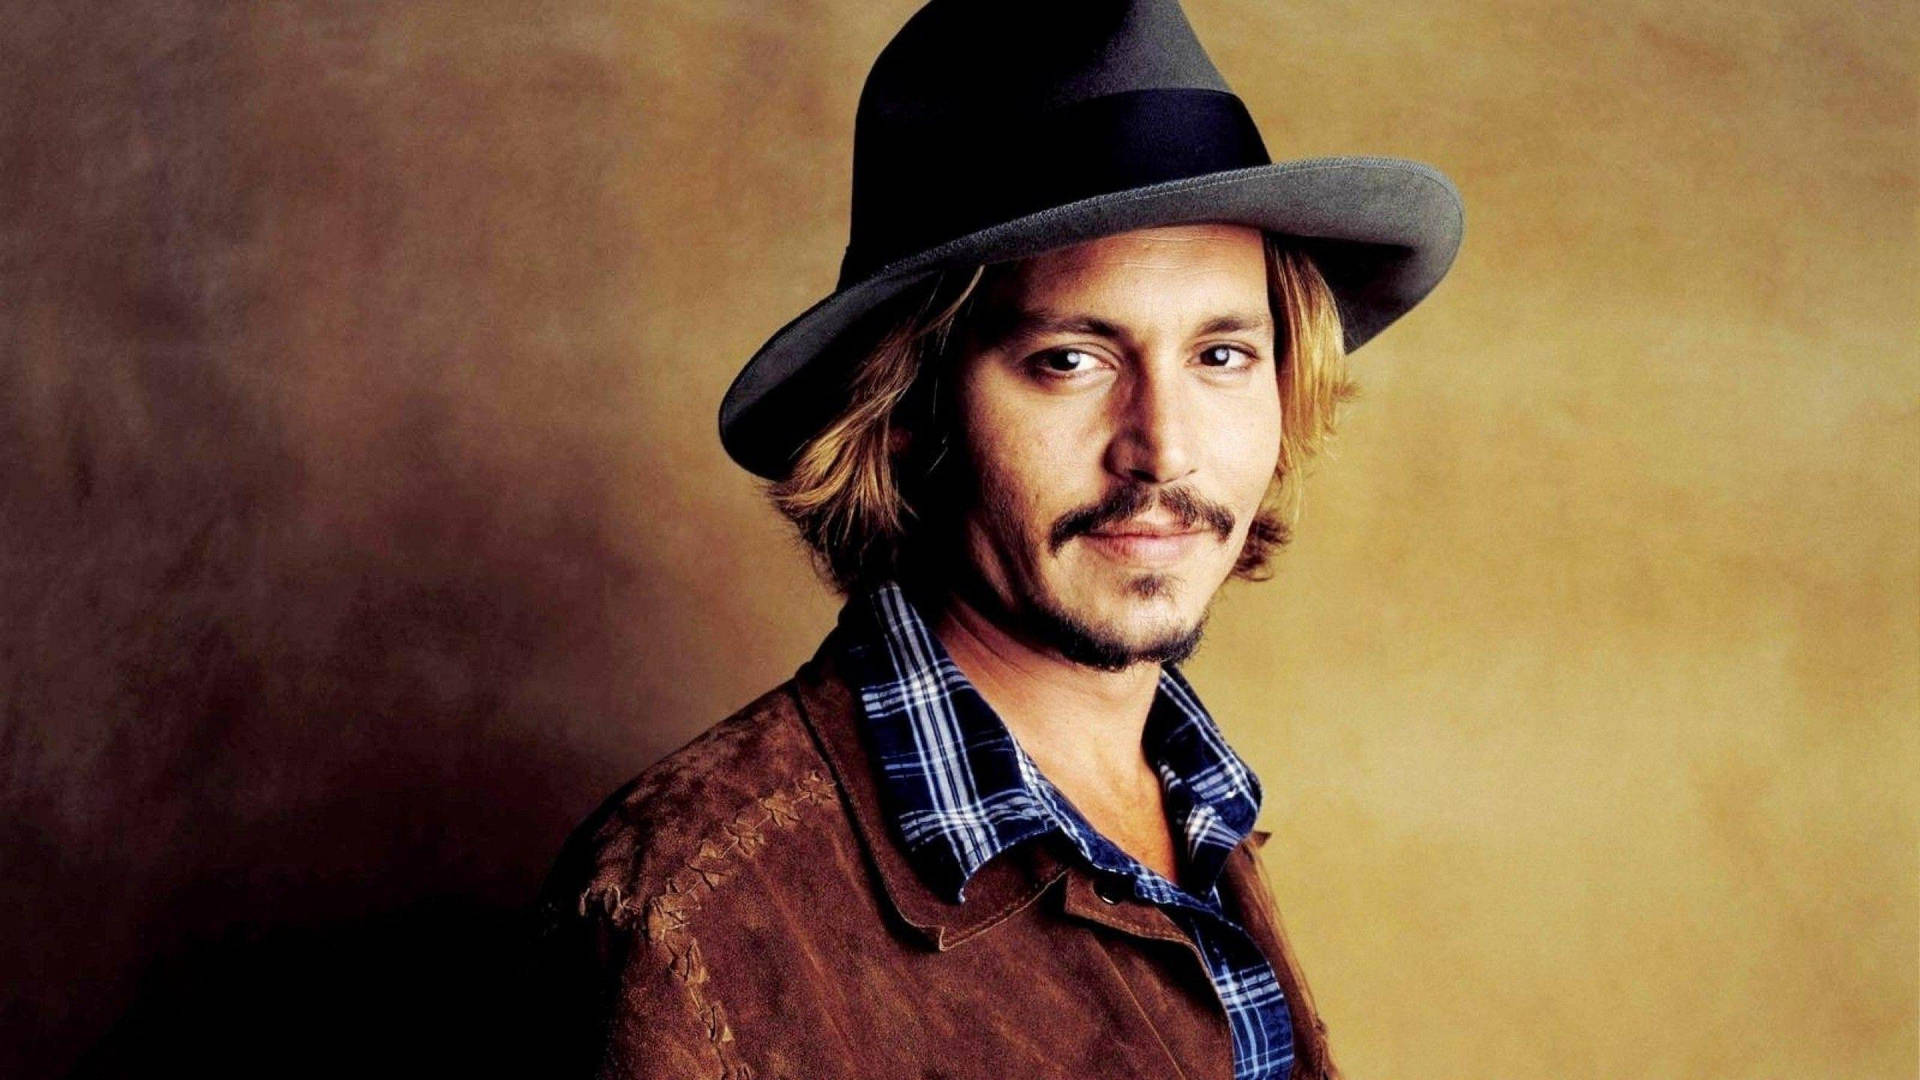 Johnny Depp 2560 X 1440 Wallpaper